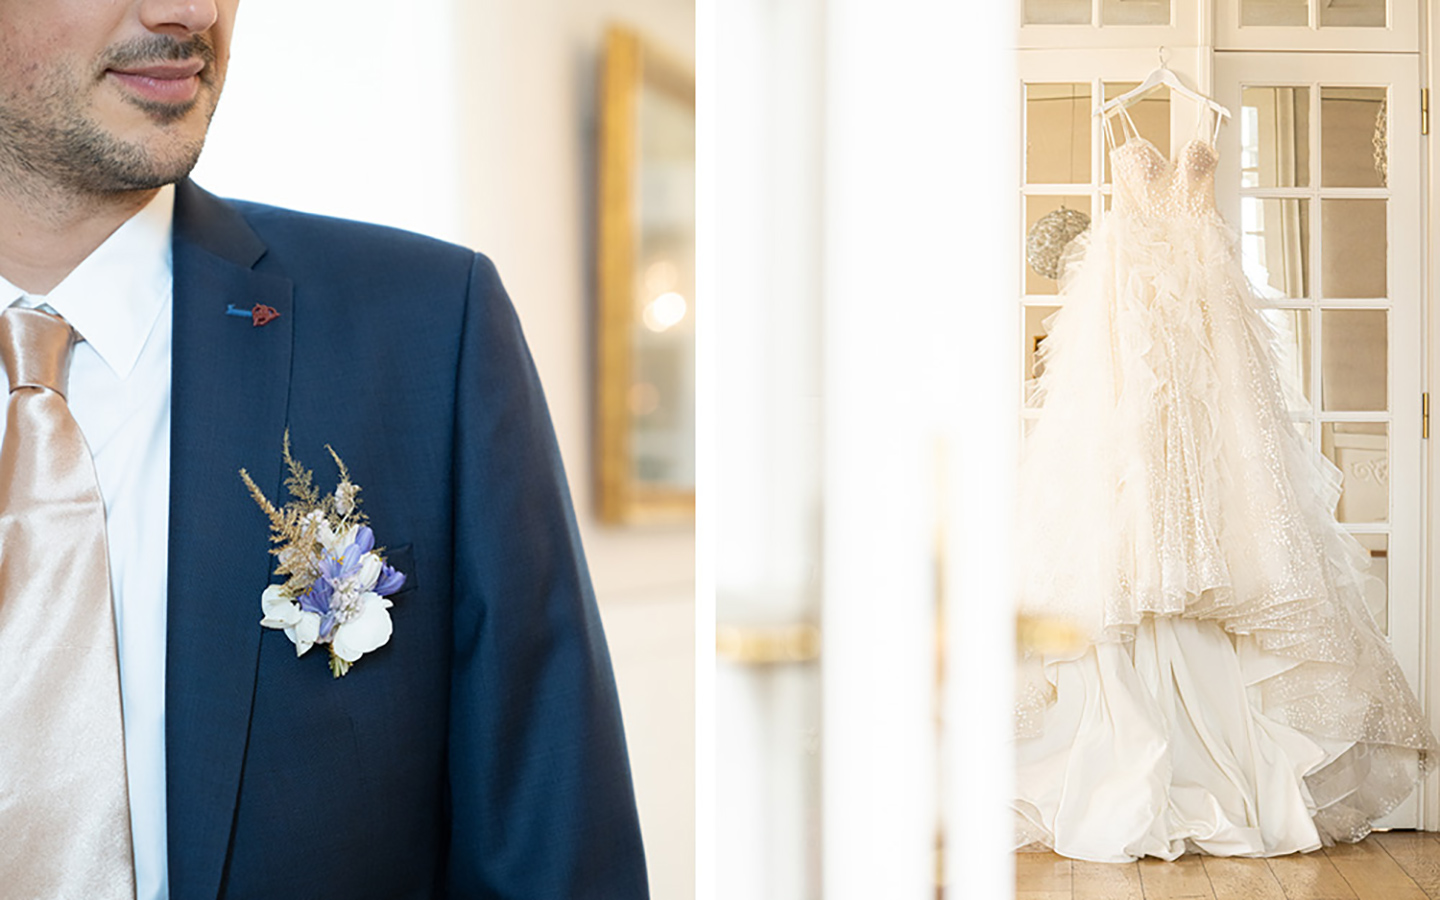 Der Bräutigam trägt einen dunkelblauen Anzug mit einer Beige-Peach Krawatte. Ein Ausschnitt davon ist zu sehen, ebenso wie. das pompöse und aufwändig verarbeitete Prinzessinnenkleid der Braut. 